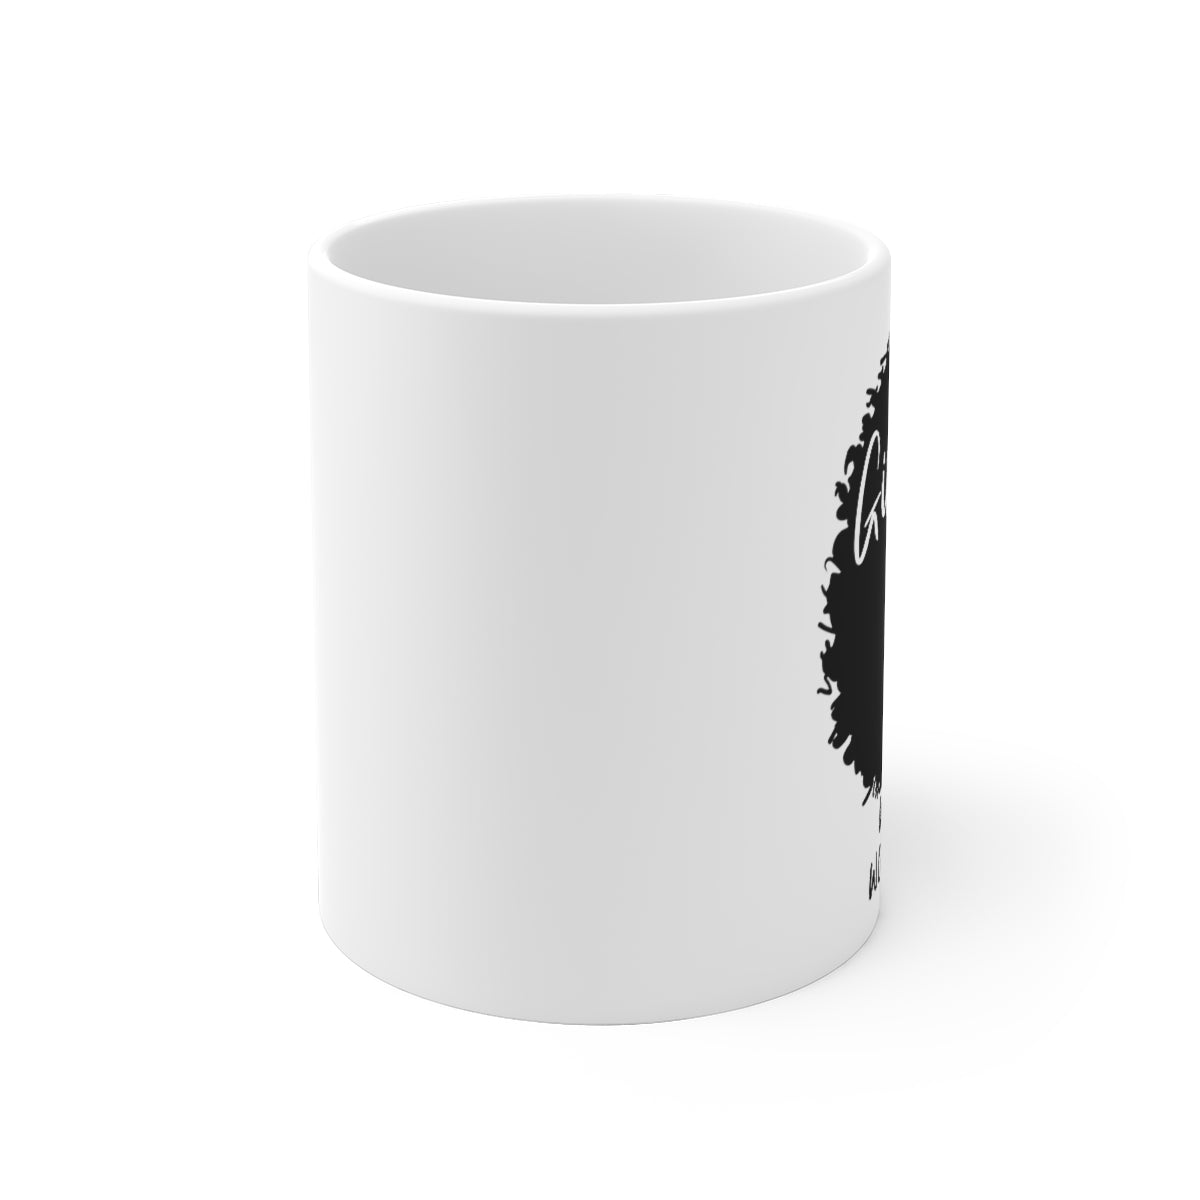 Girl Boss White Ceramic Mug